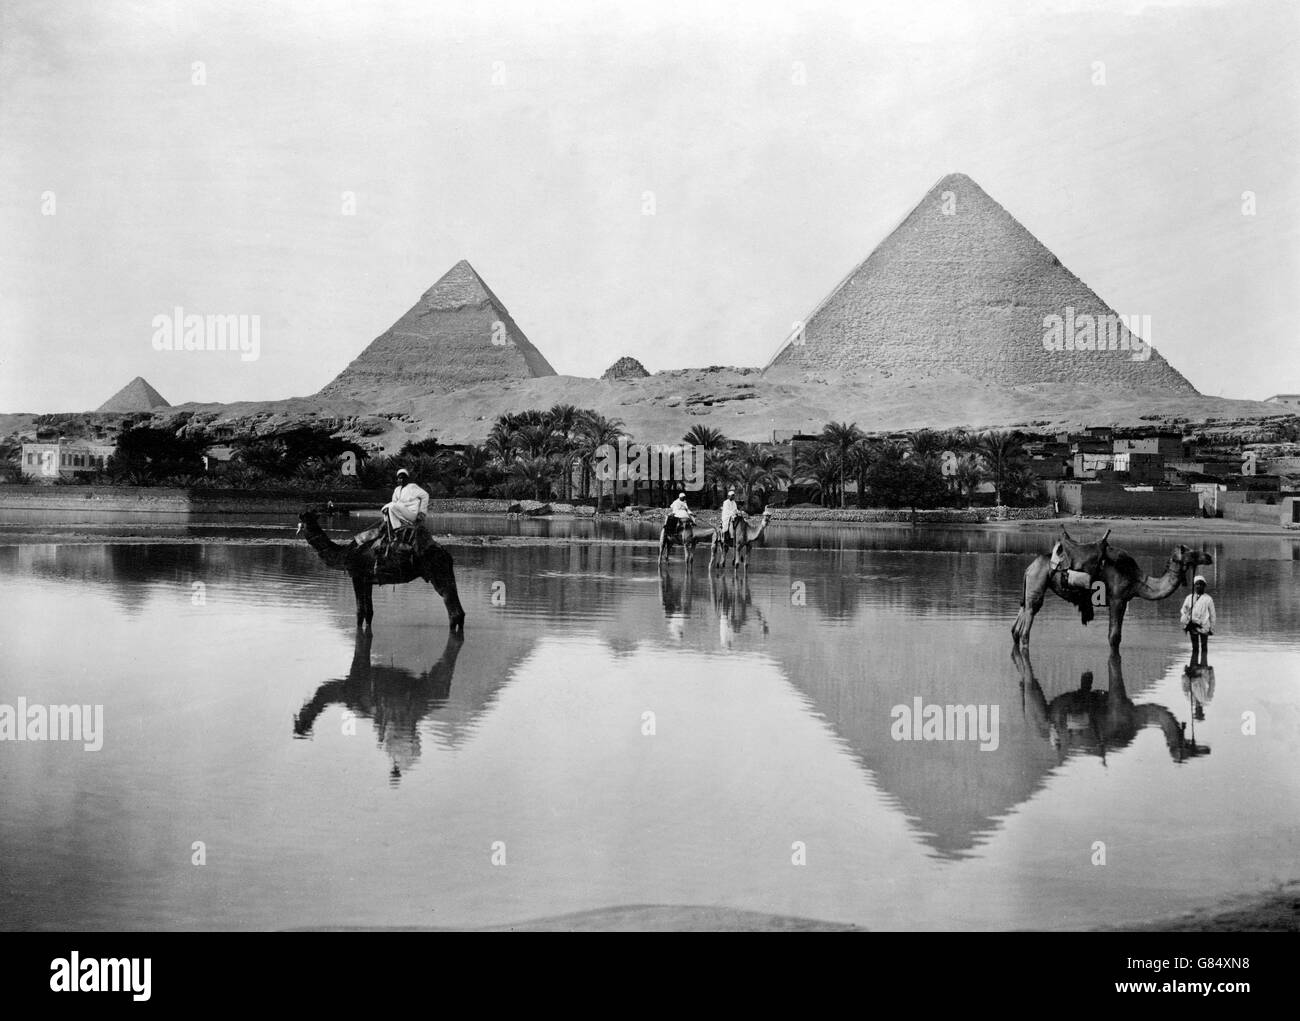 Les Pyramides de Gizeh à la fin du 19e siècle lors de l'inondation. Photo prise entre 1890 et 1900 par Frank G Charpentier. Banque D'Images